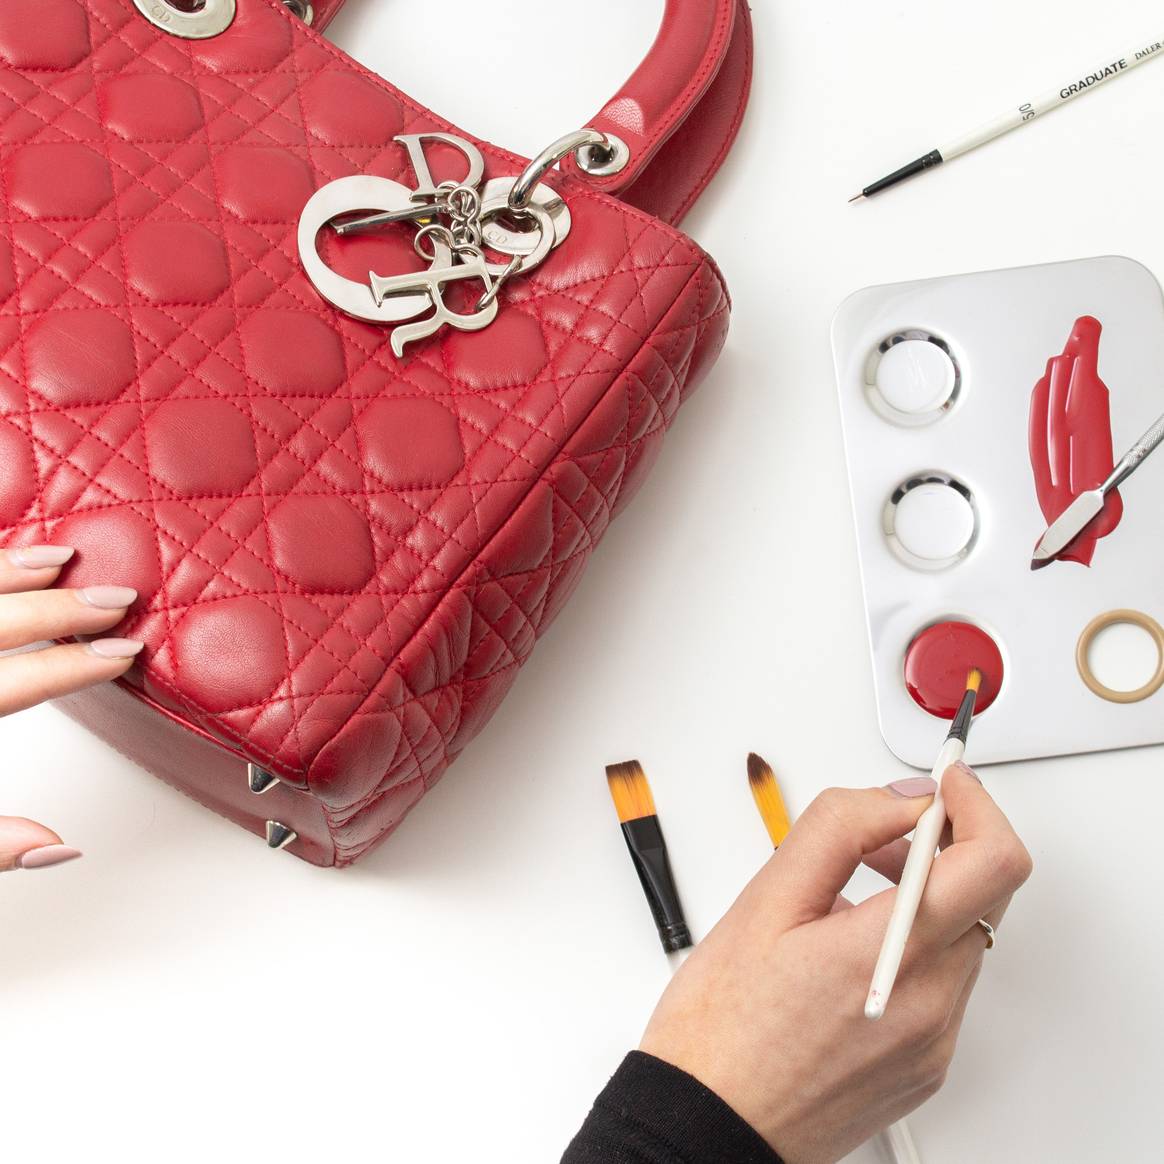 The Handbag Clinic restoration of a Dior bag